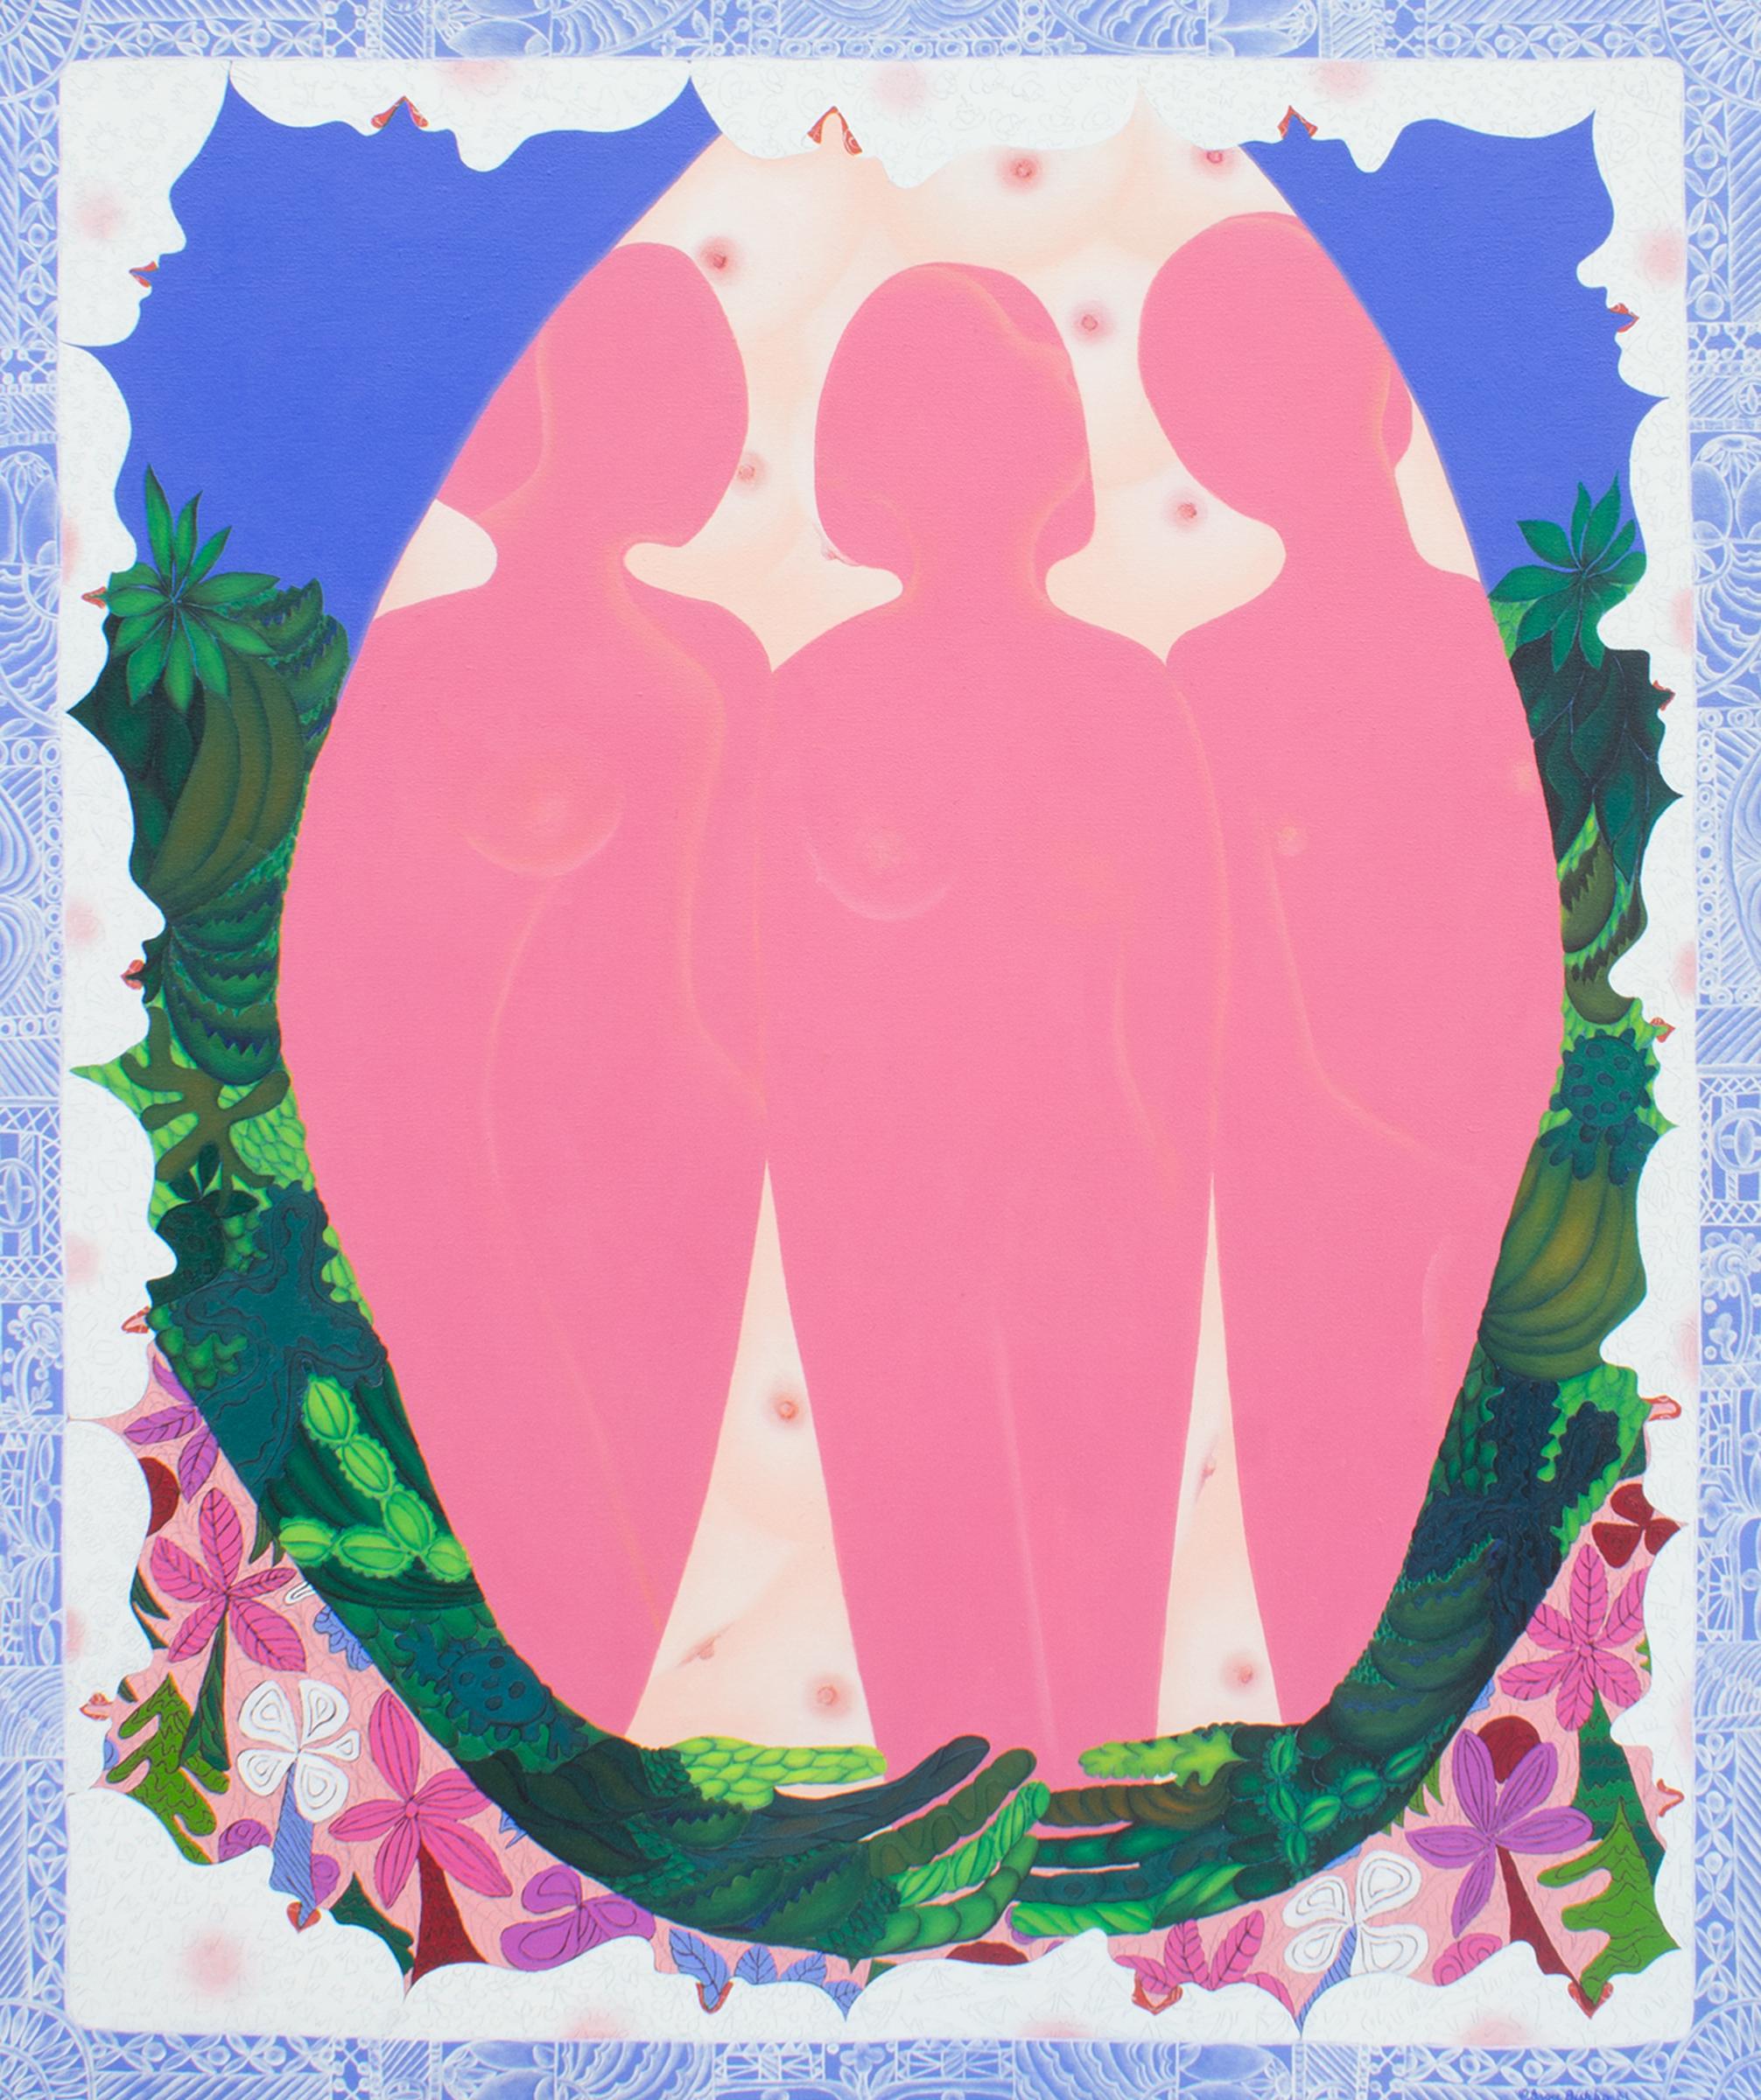 Peinture à l'huile sur toile de 1981 de l'artiste américaine Grace Bishko. Intitulée Mother Ego and Her Pressure Cooker, cette peinture vibrante représente trois figures féminines roses au centre entourées de deux bras formés d'un ciel en haut et